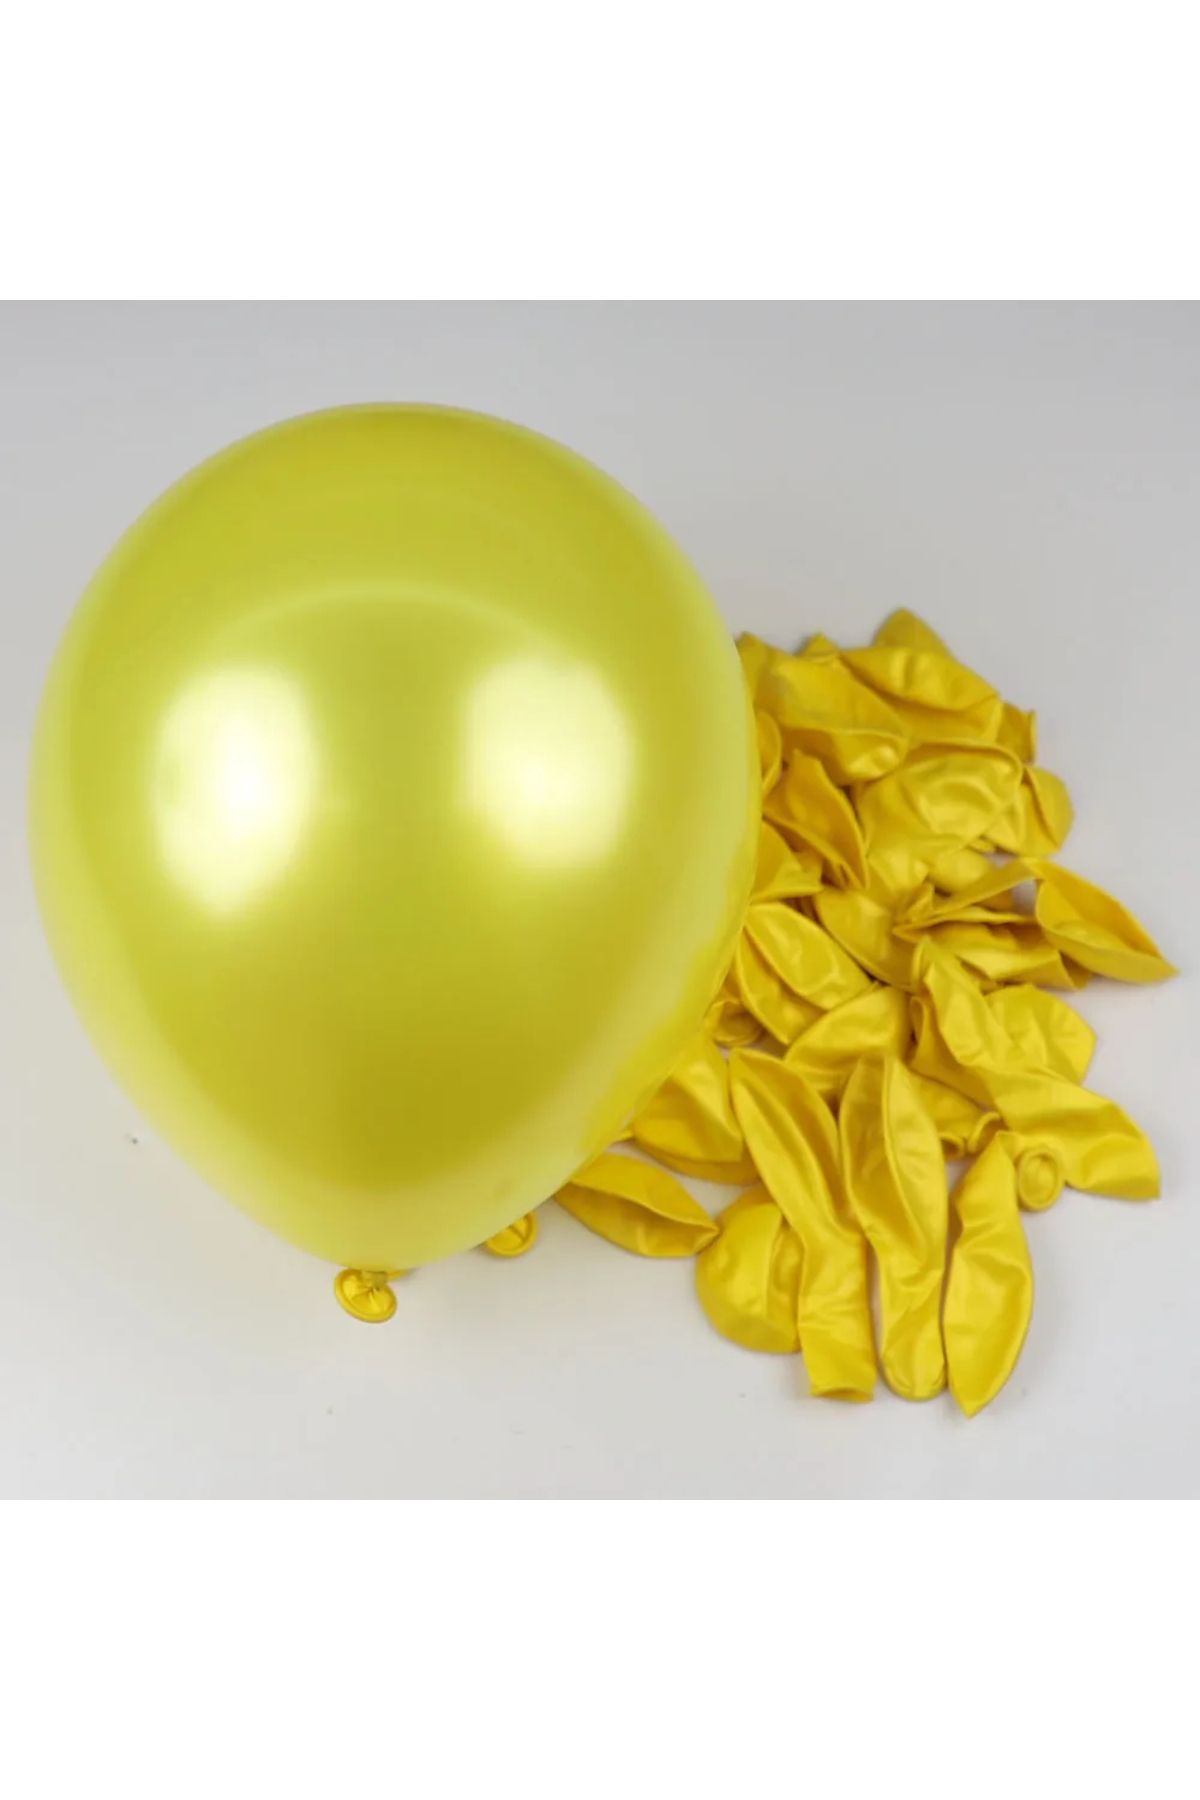 pazariz Metalik Balon Parti Organizasyon Balonu 12 İnç Düğün Doğum Günü Dekorasyon 20 Adet